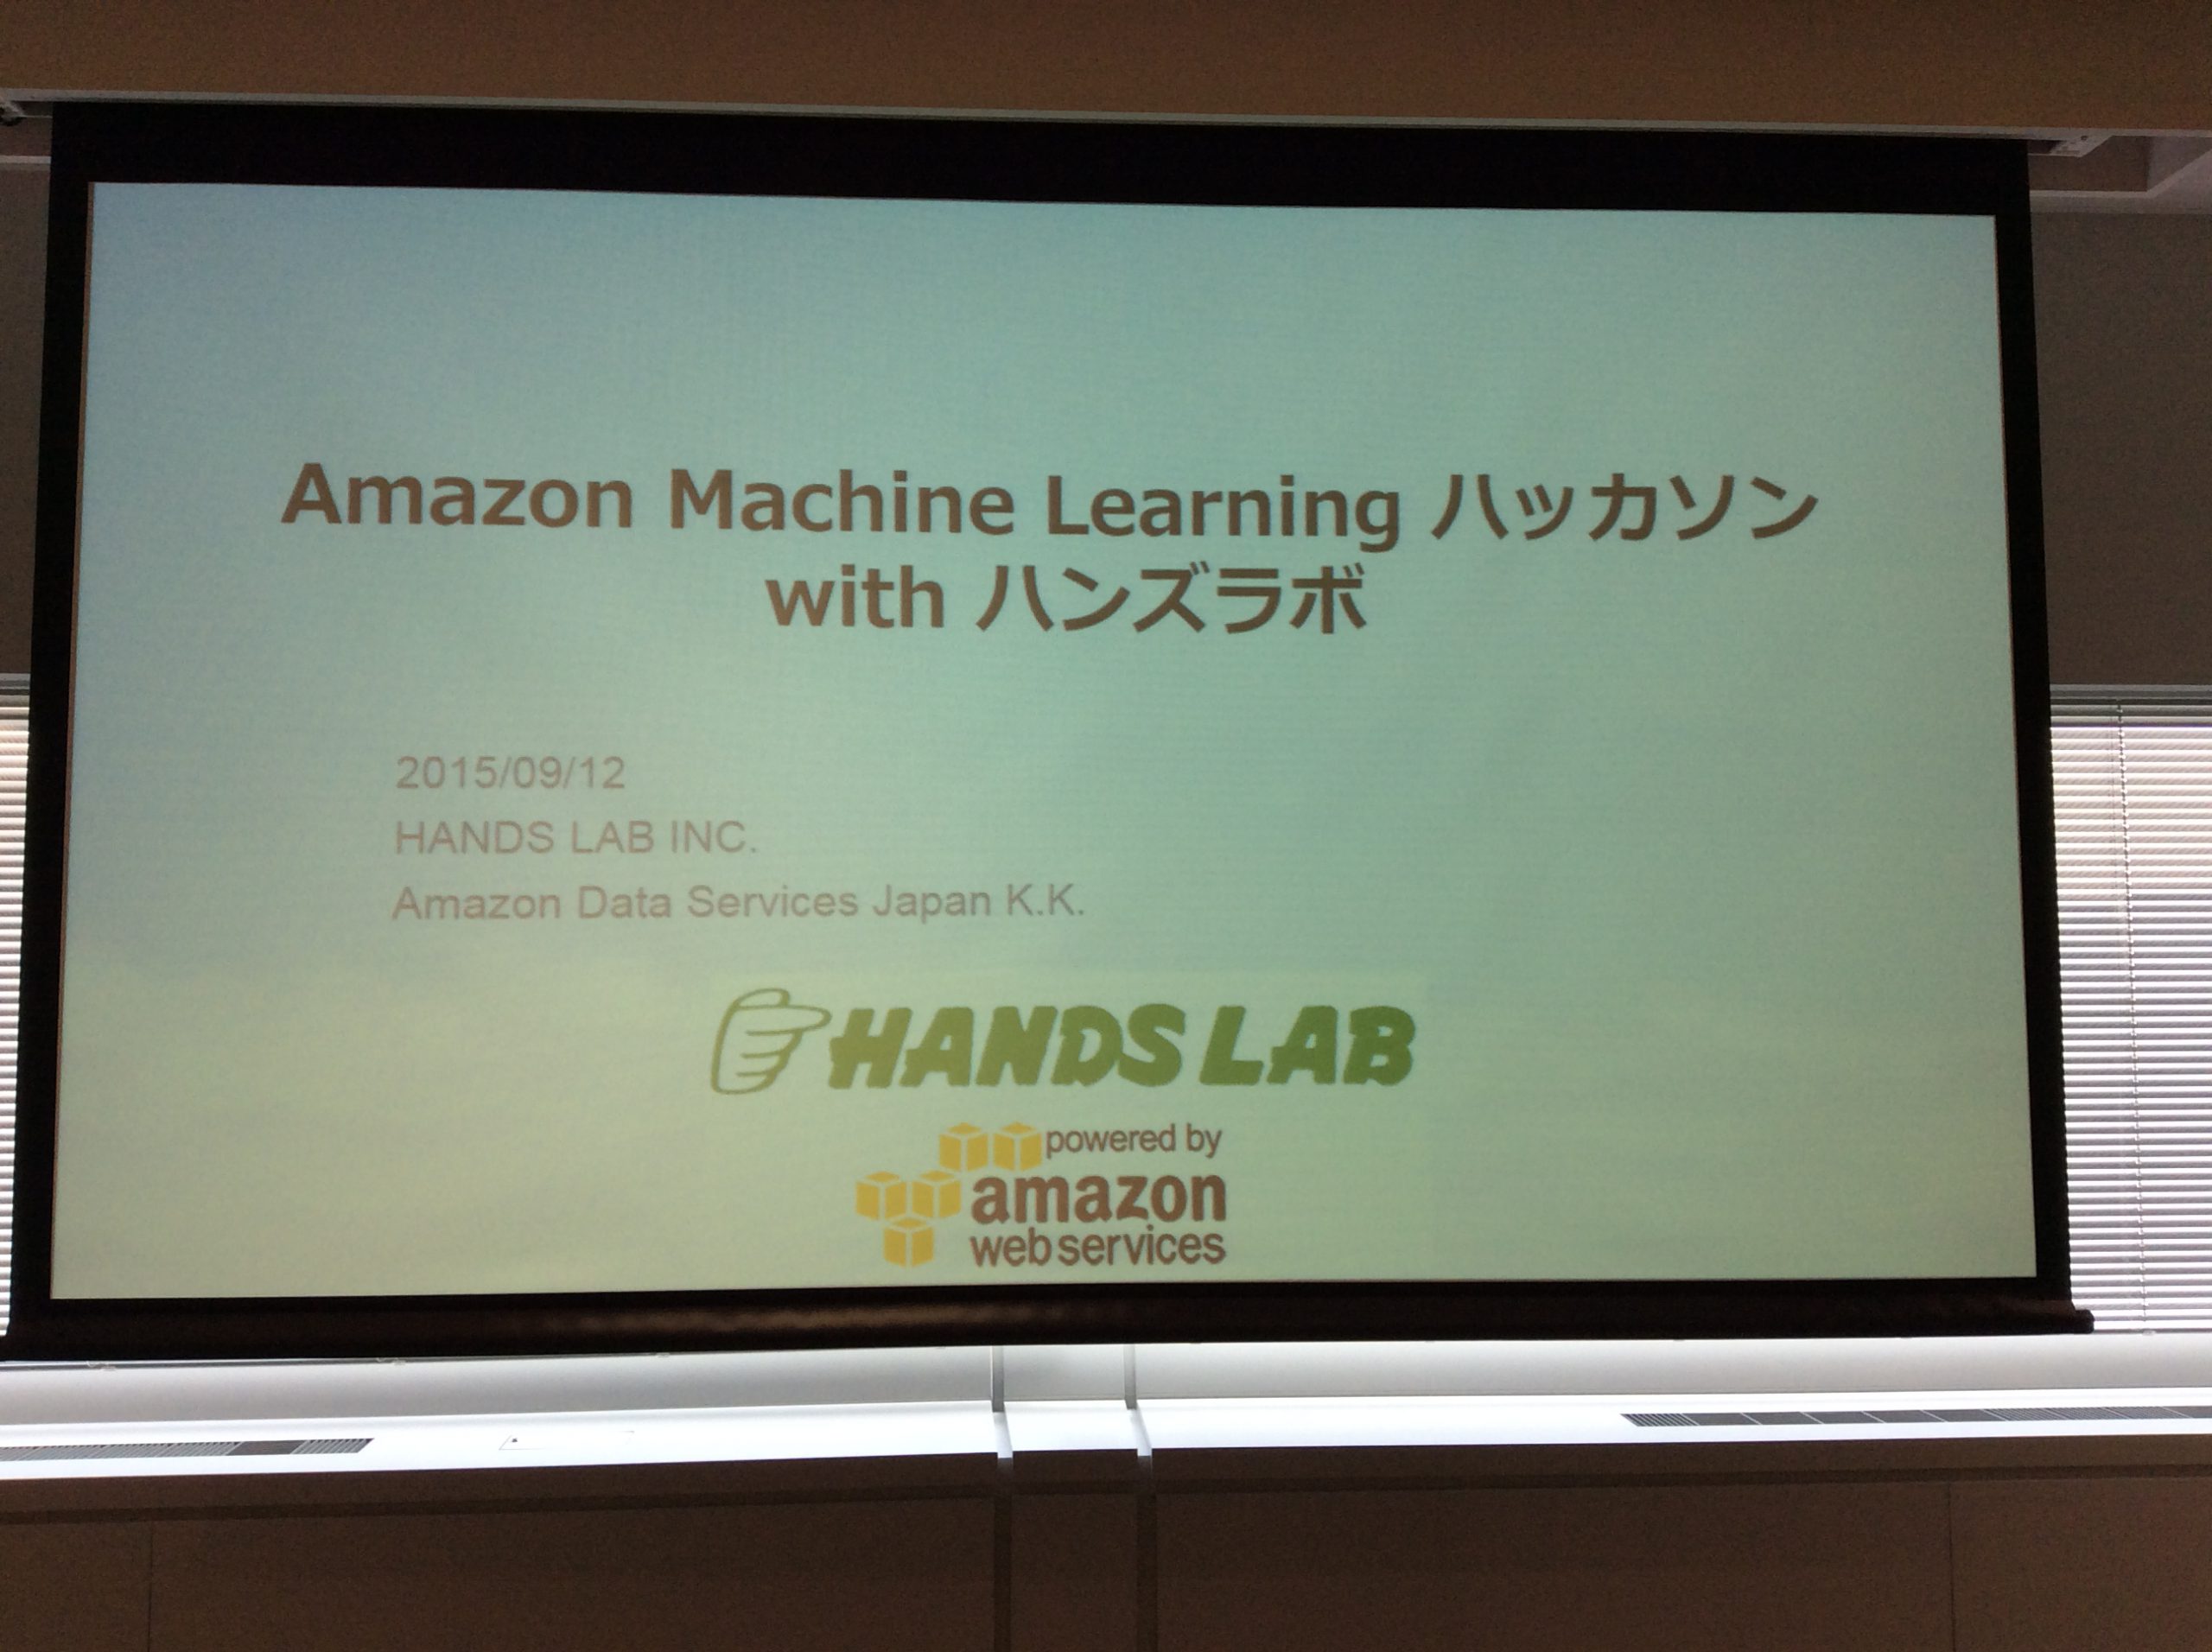 Amazon Machine Learning ハッカソンを開催しました